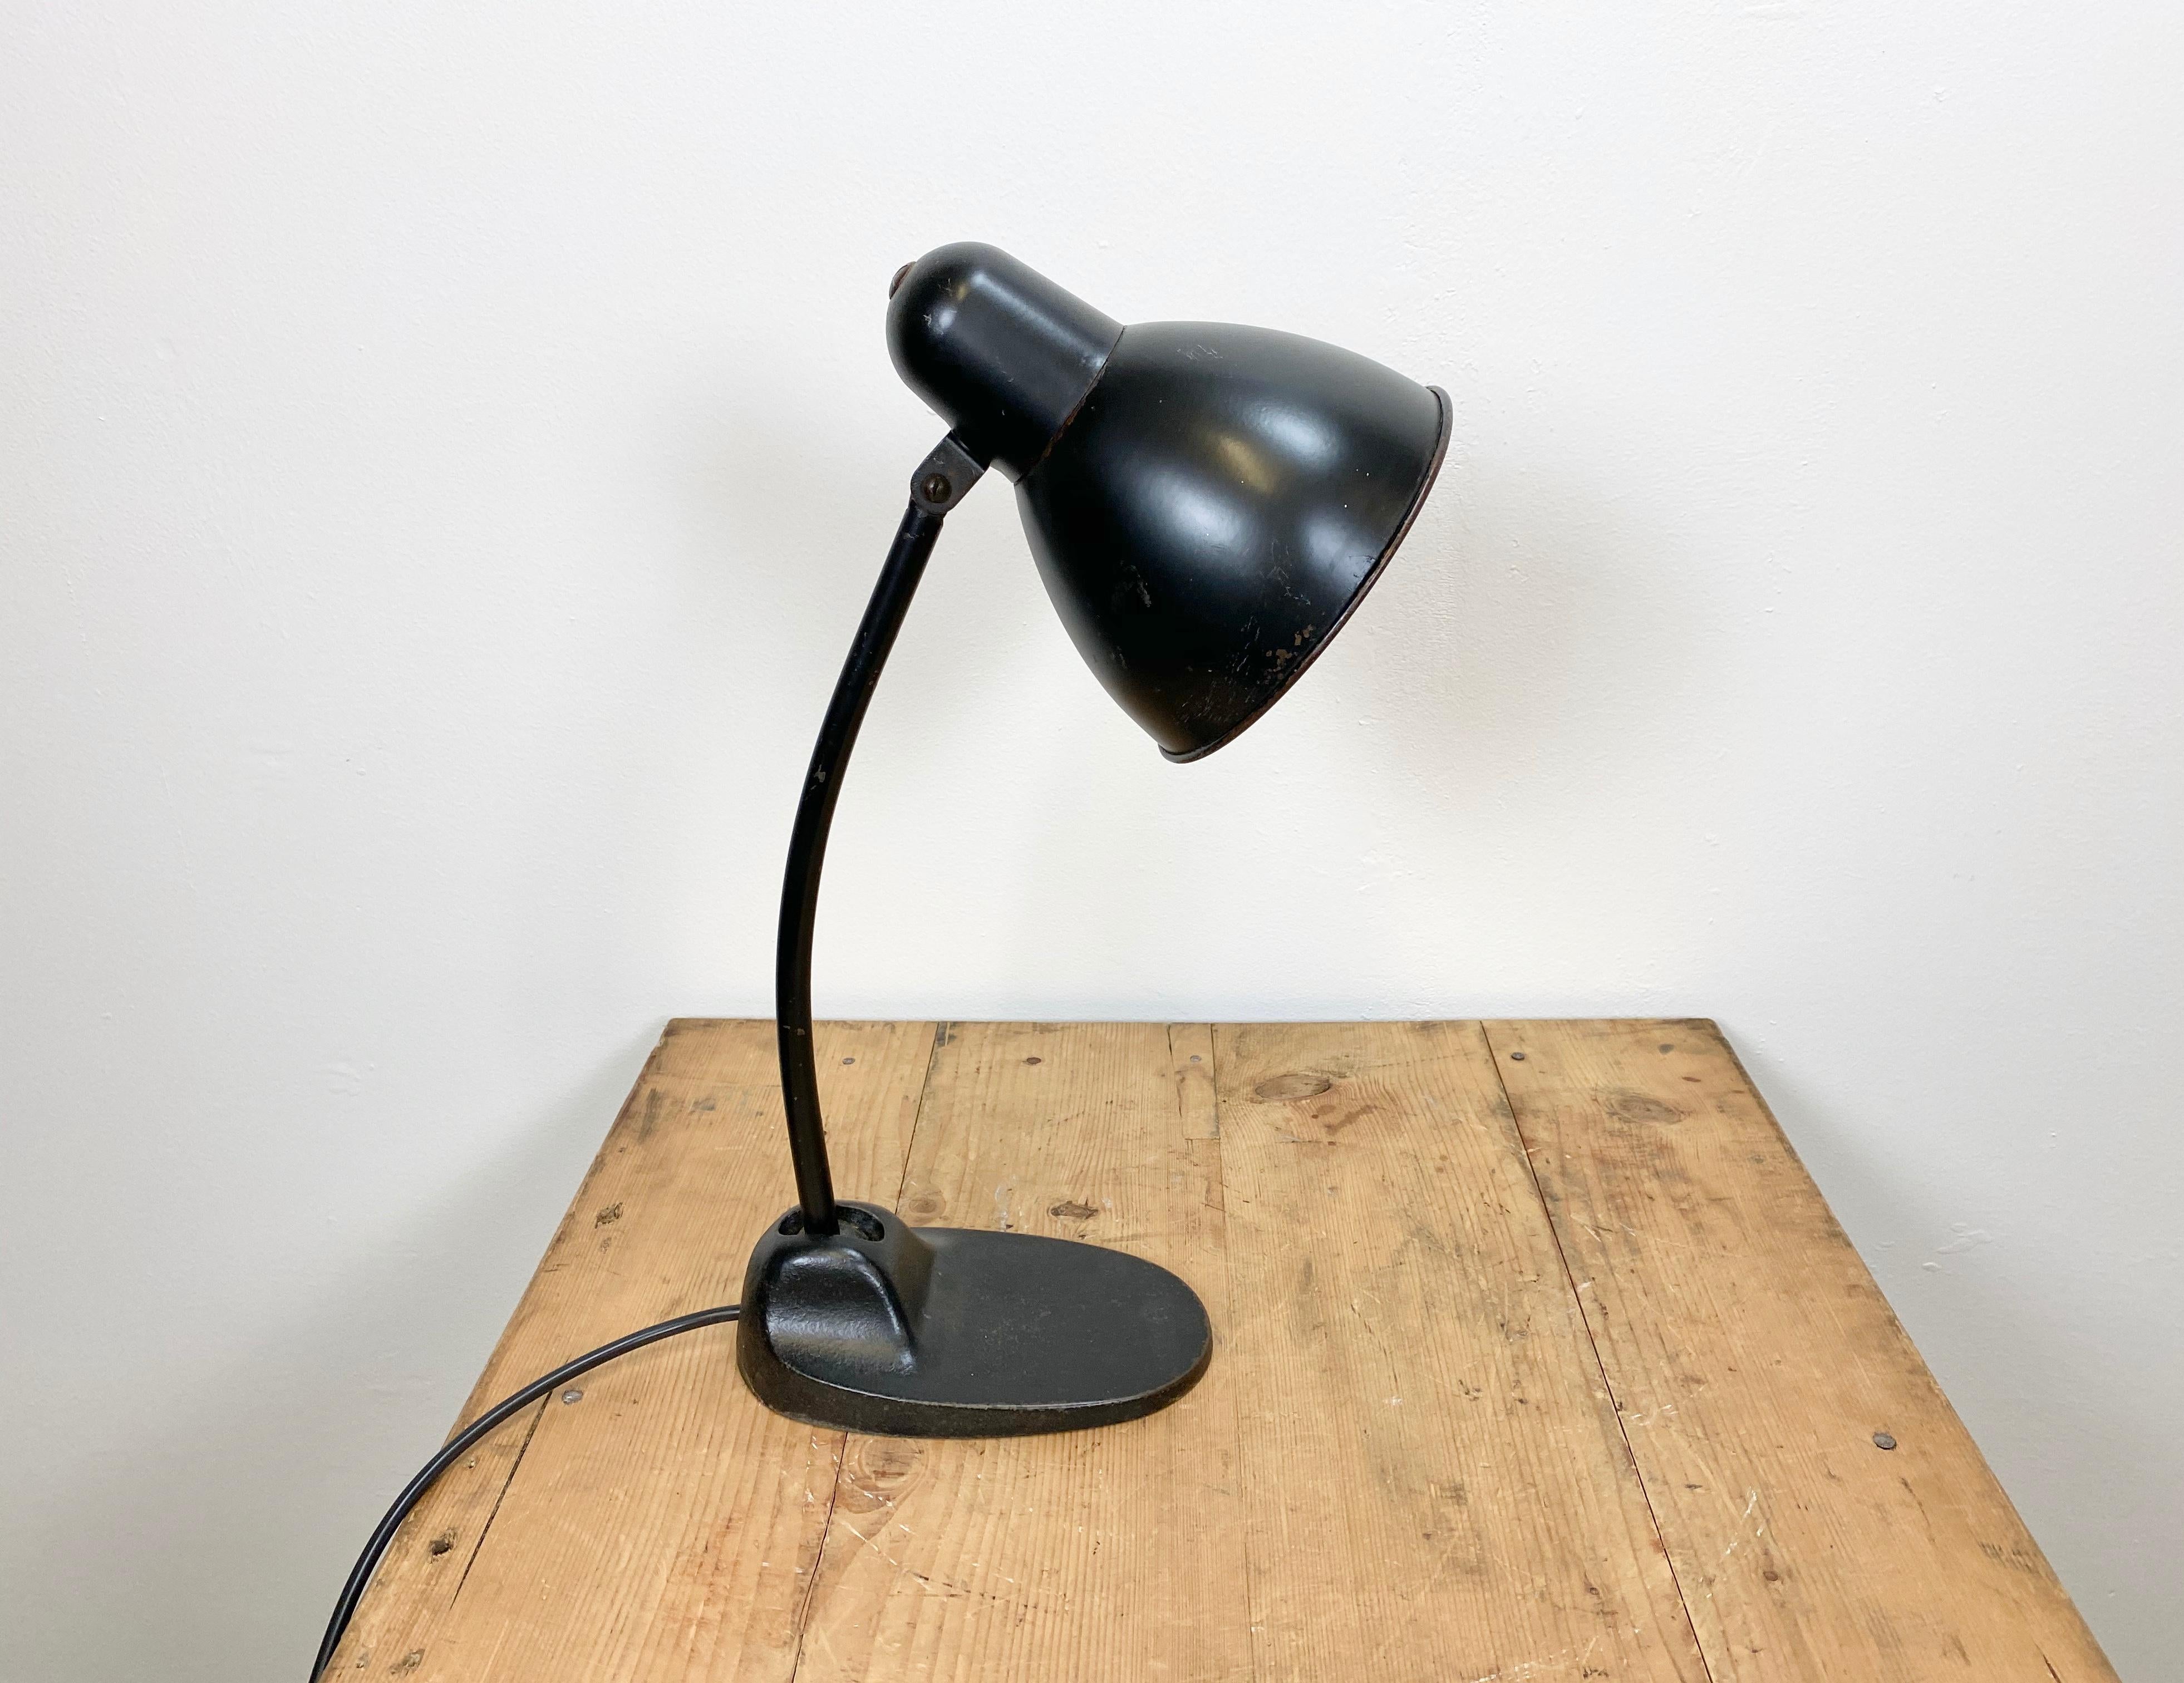 European Vintage Black Industrial Table Lamp, 1930s